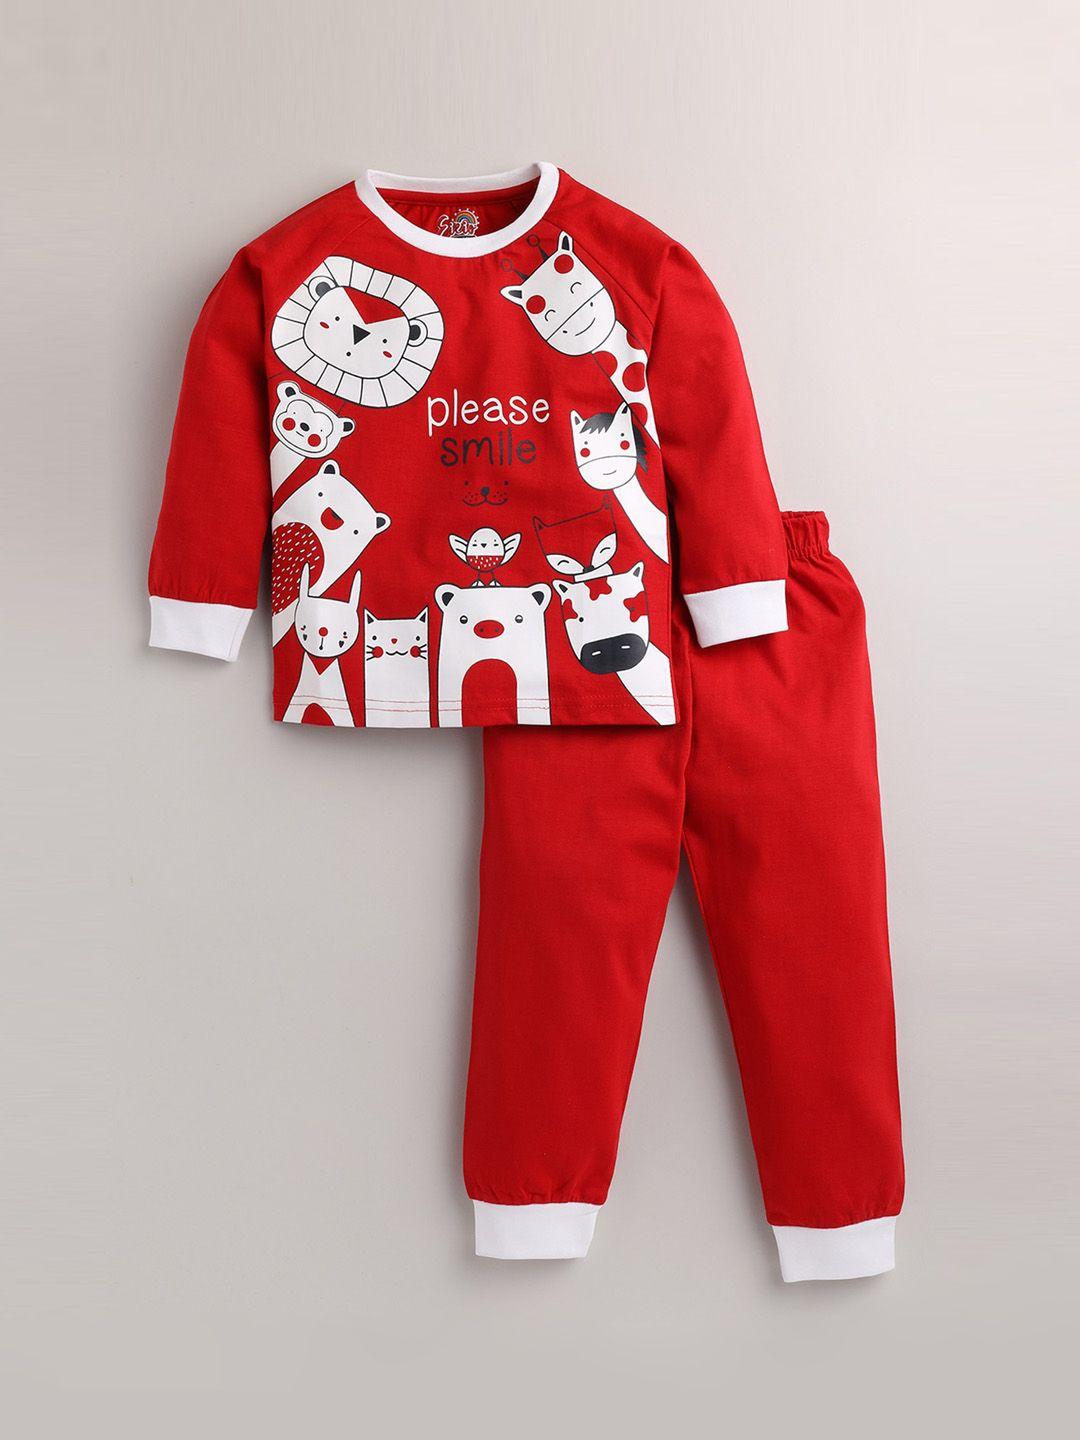 eieio kids red printed pure cotton night suit